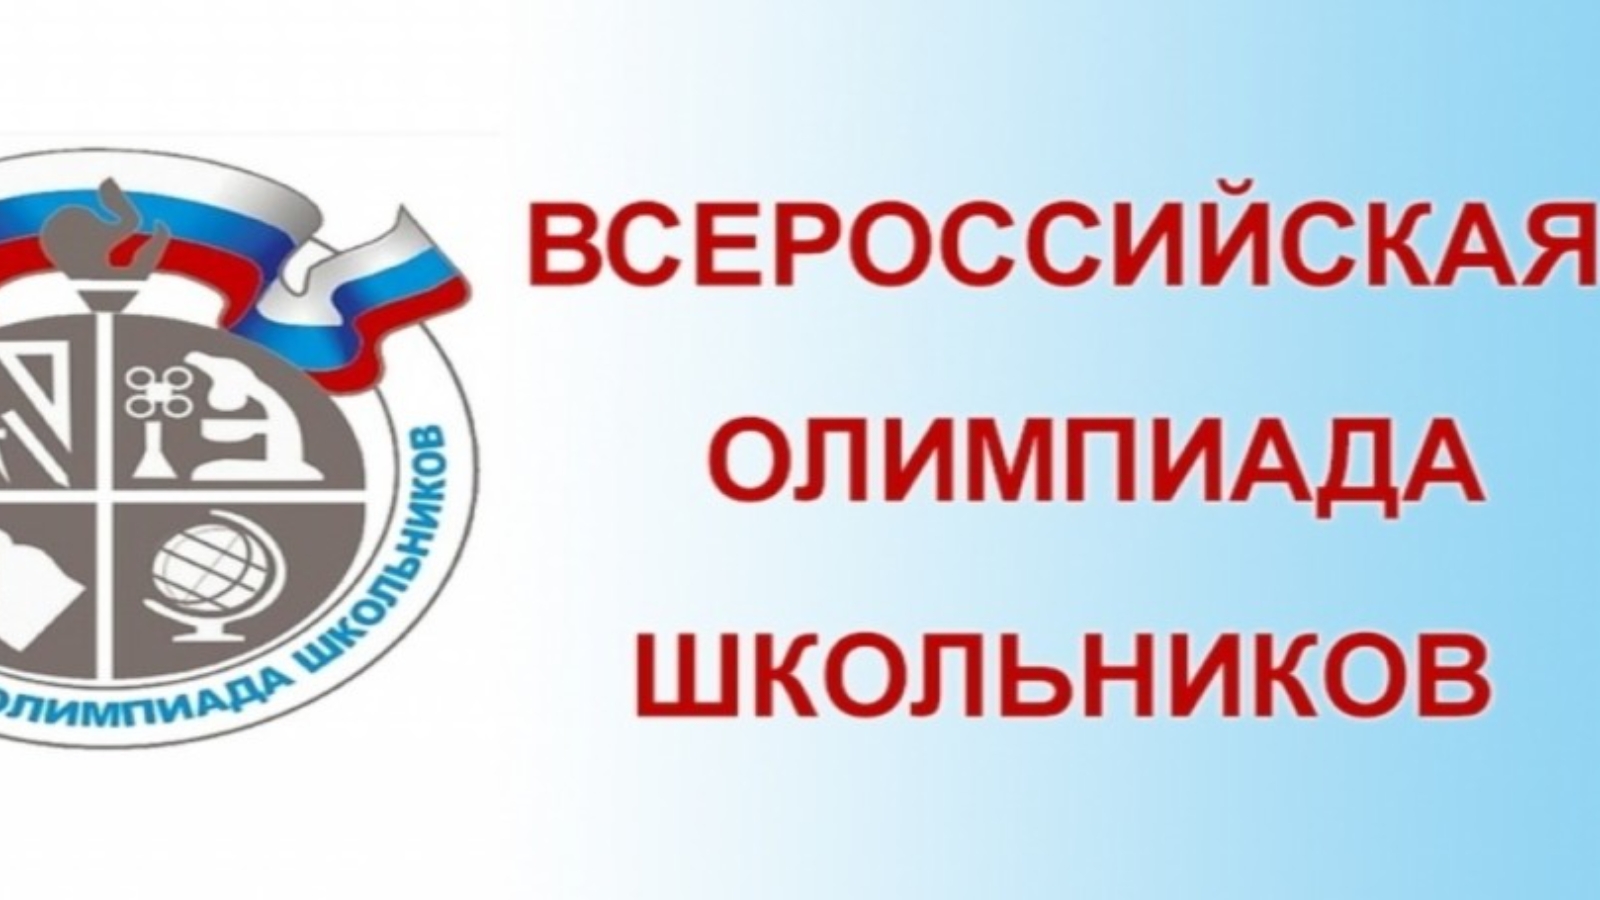 Приказ председателя комитета по образованию администрации муниципального образования «Город Саратов» от 20 октября 2022 года № 487.